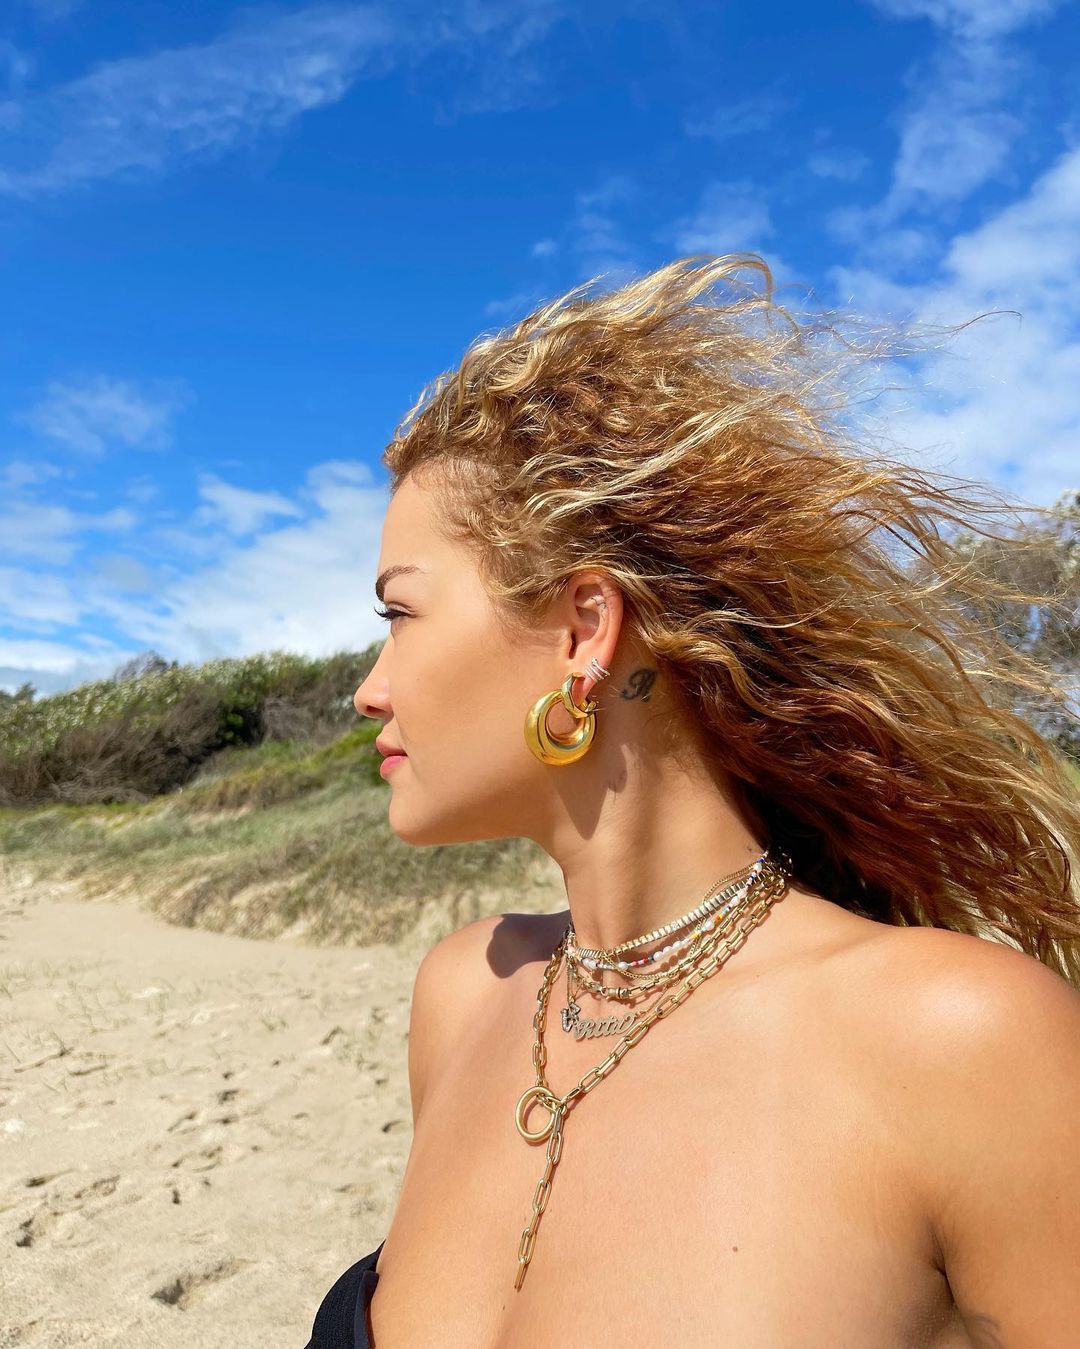 FOTOS Rita Ora encontr una playa negra! - Photo 35